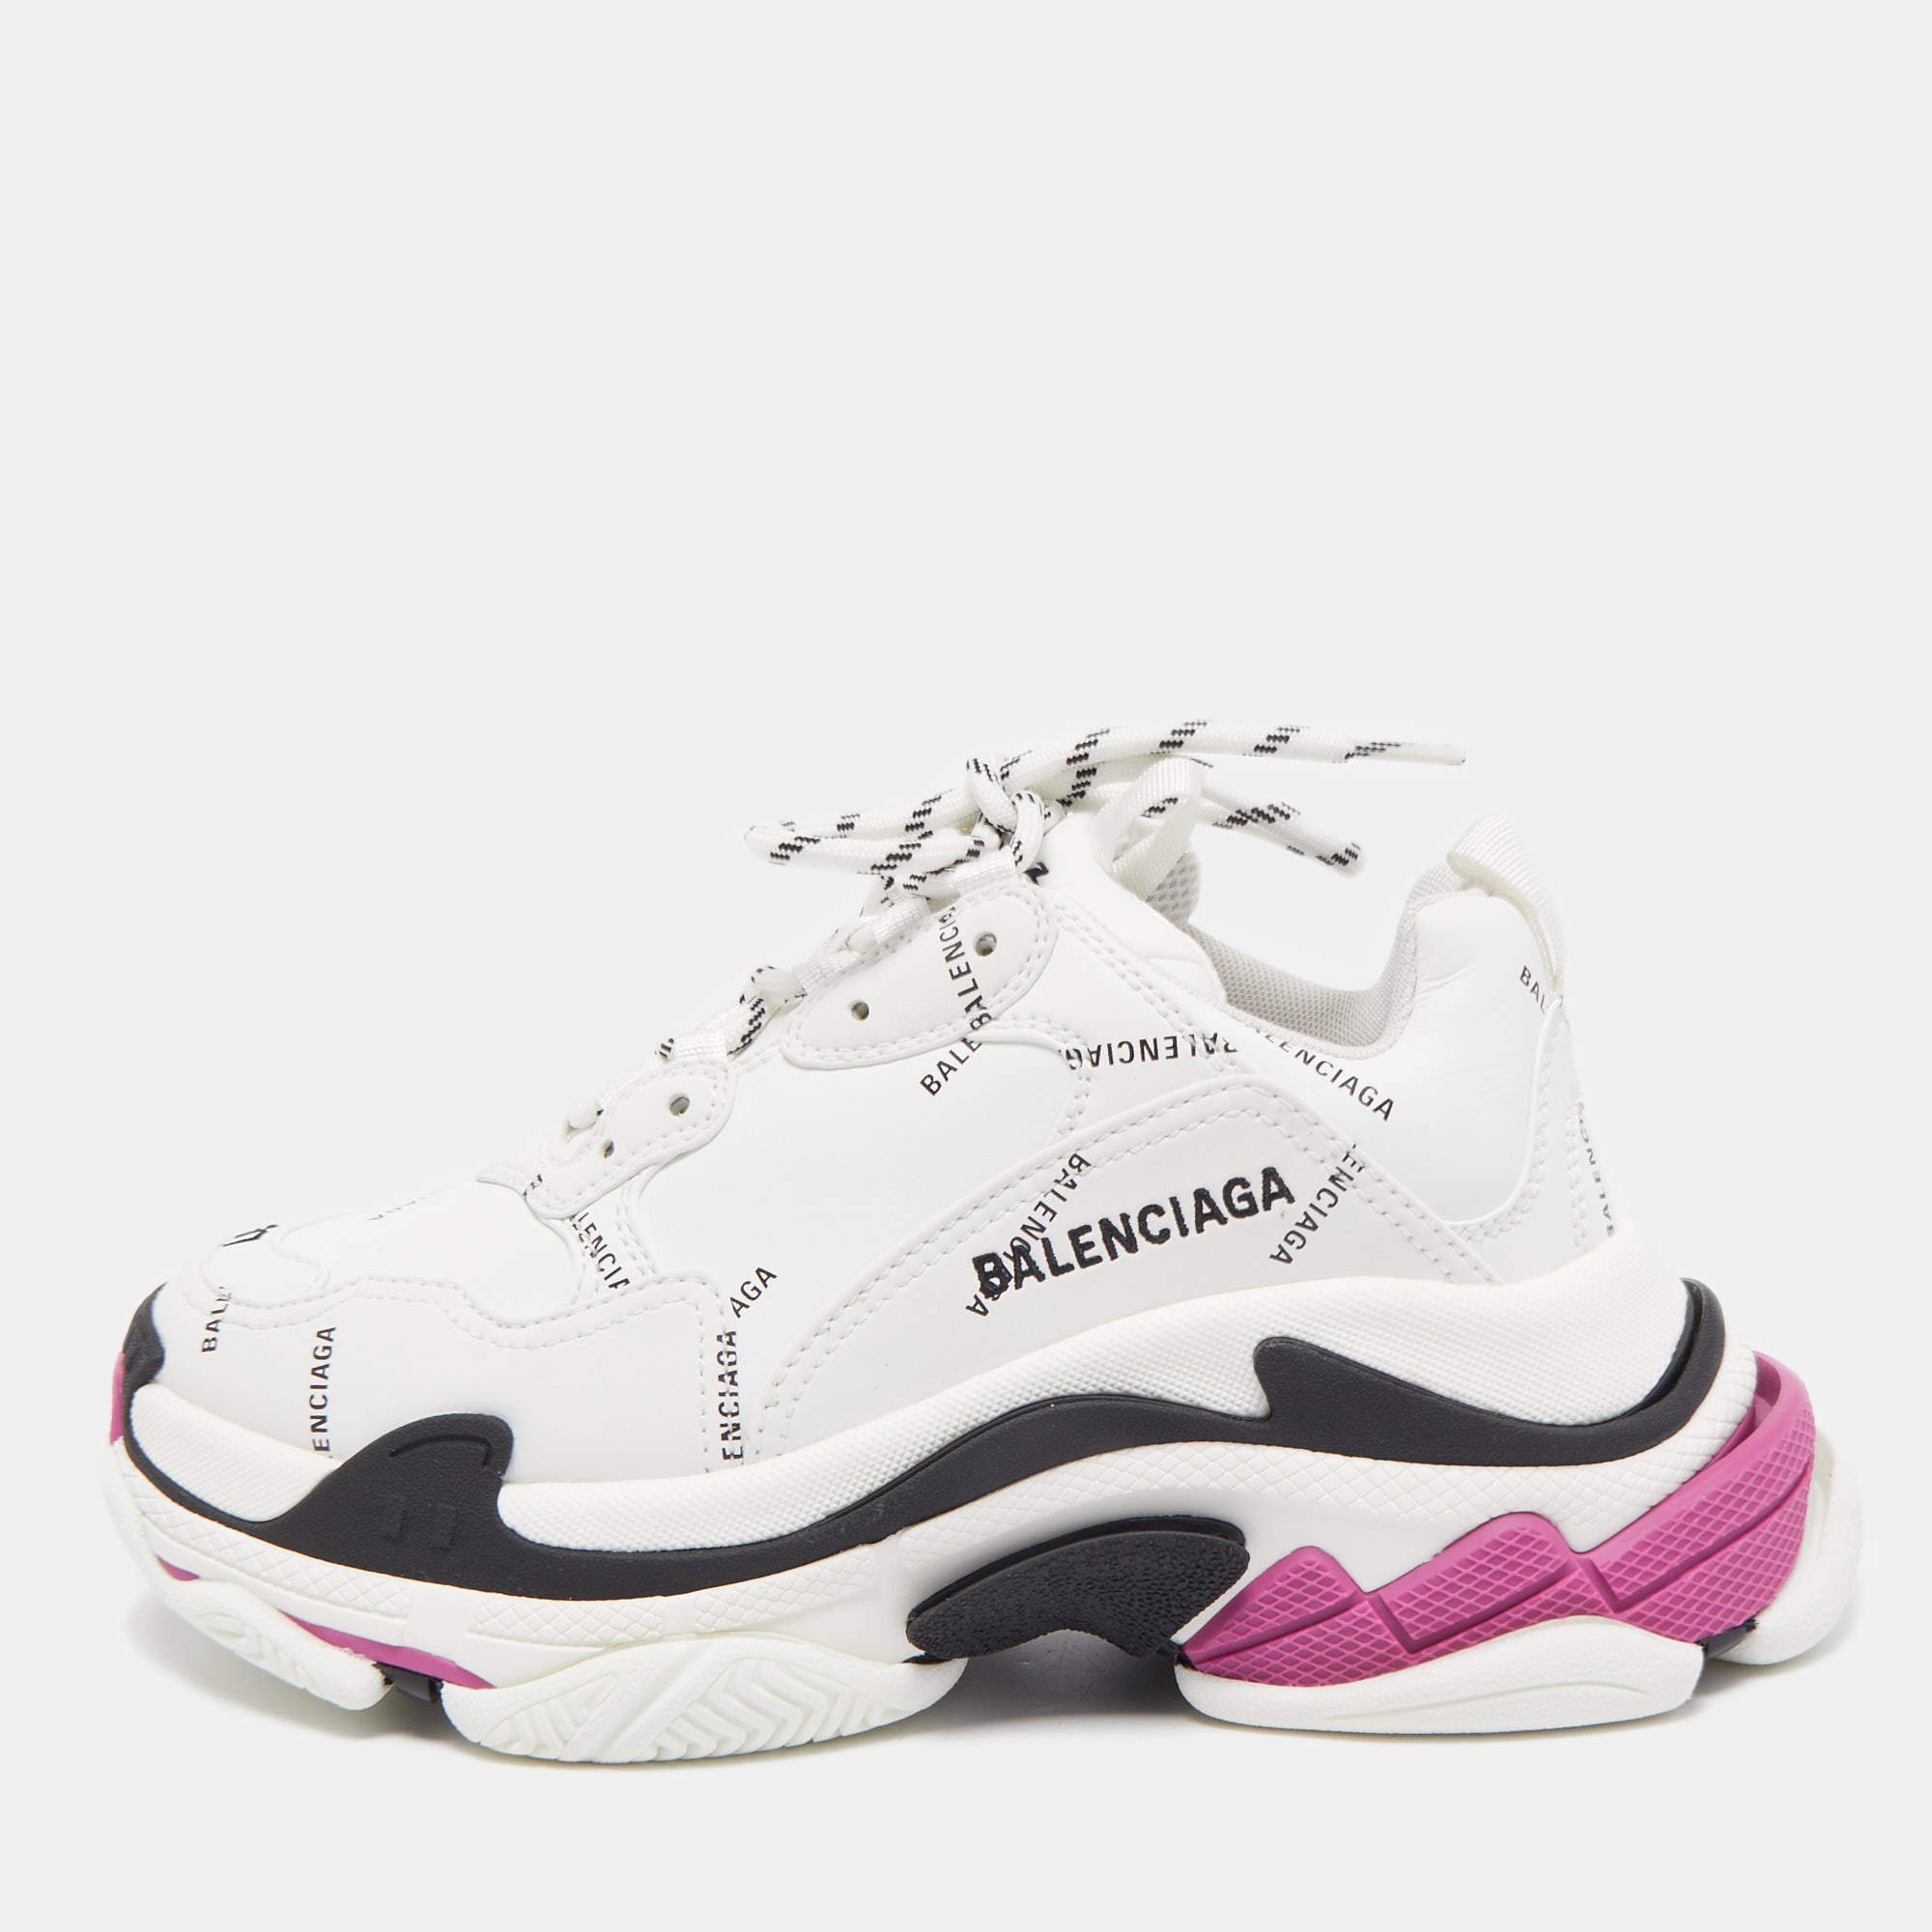 Balenciaga Triple S Women039s White And Multicolor Sneakers New  eBay